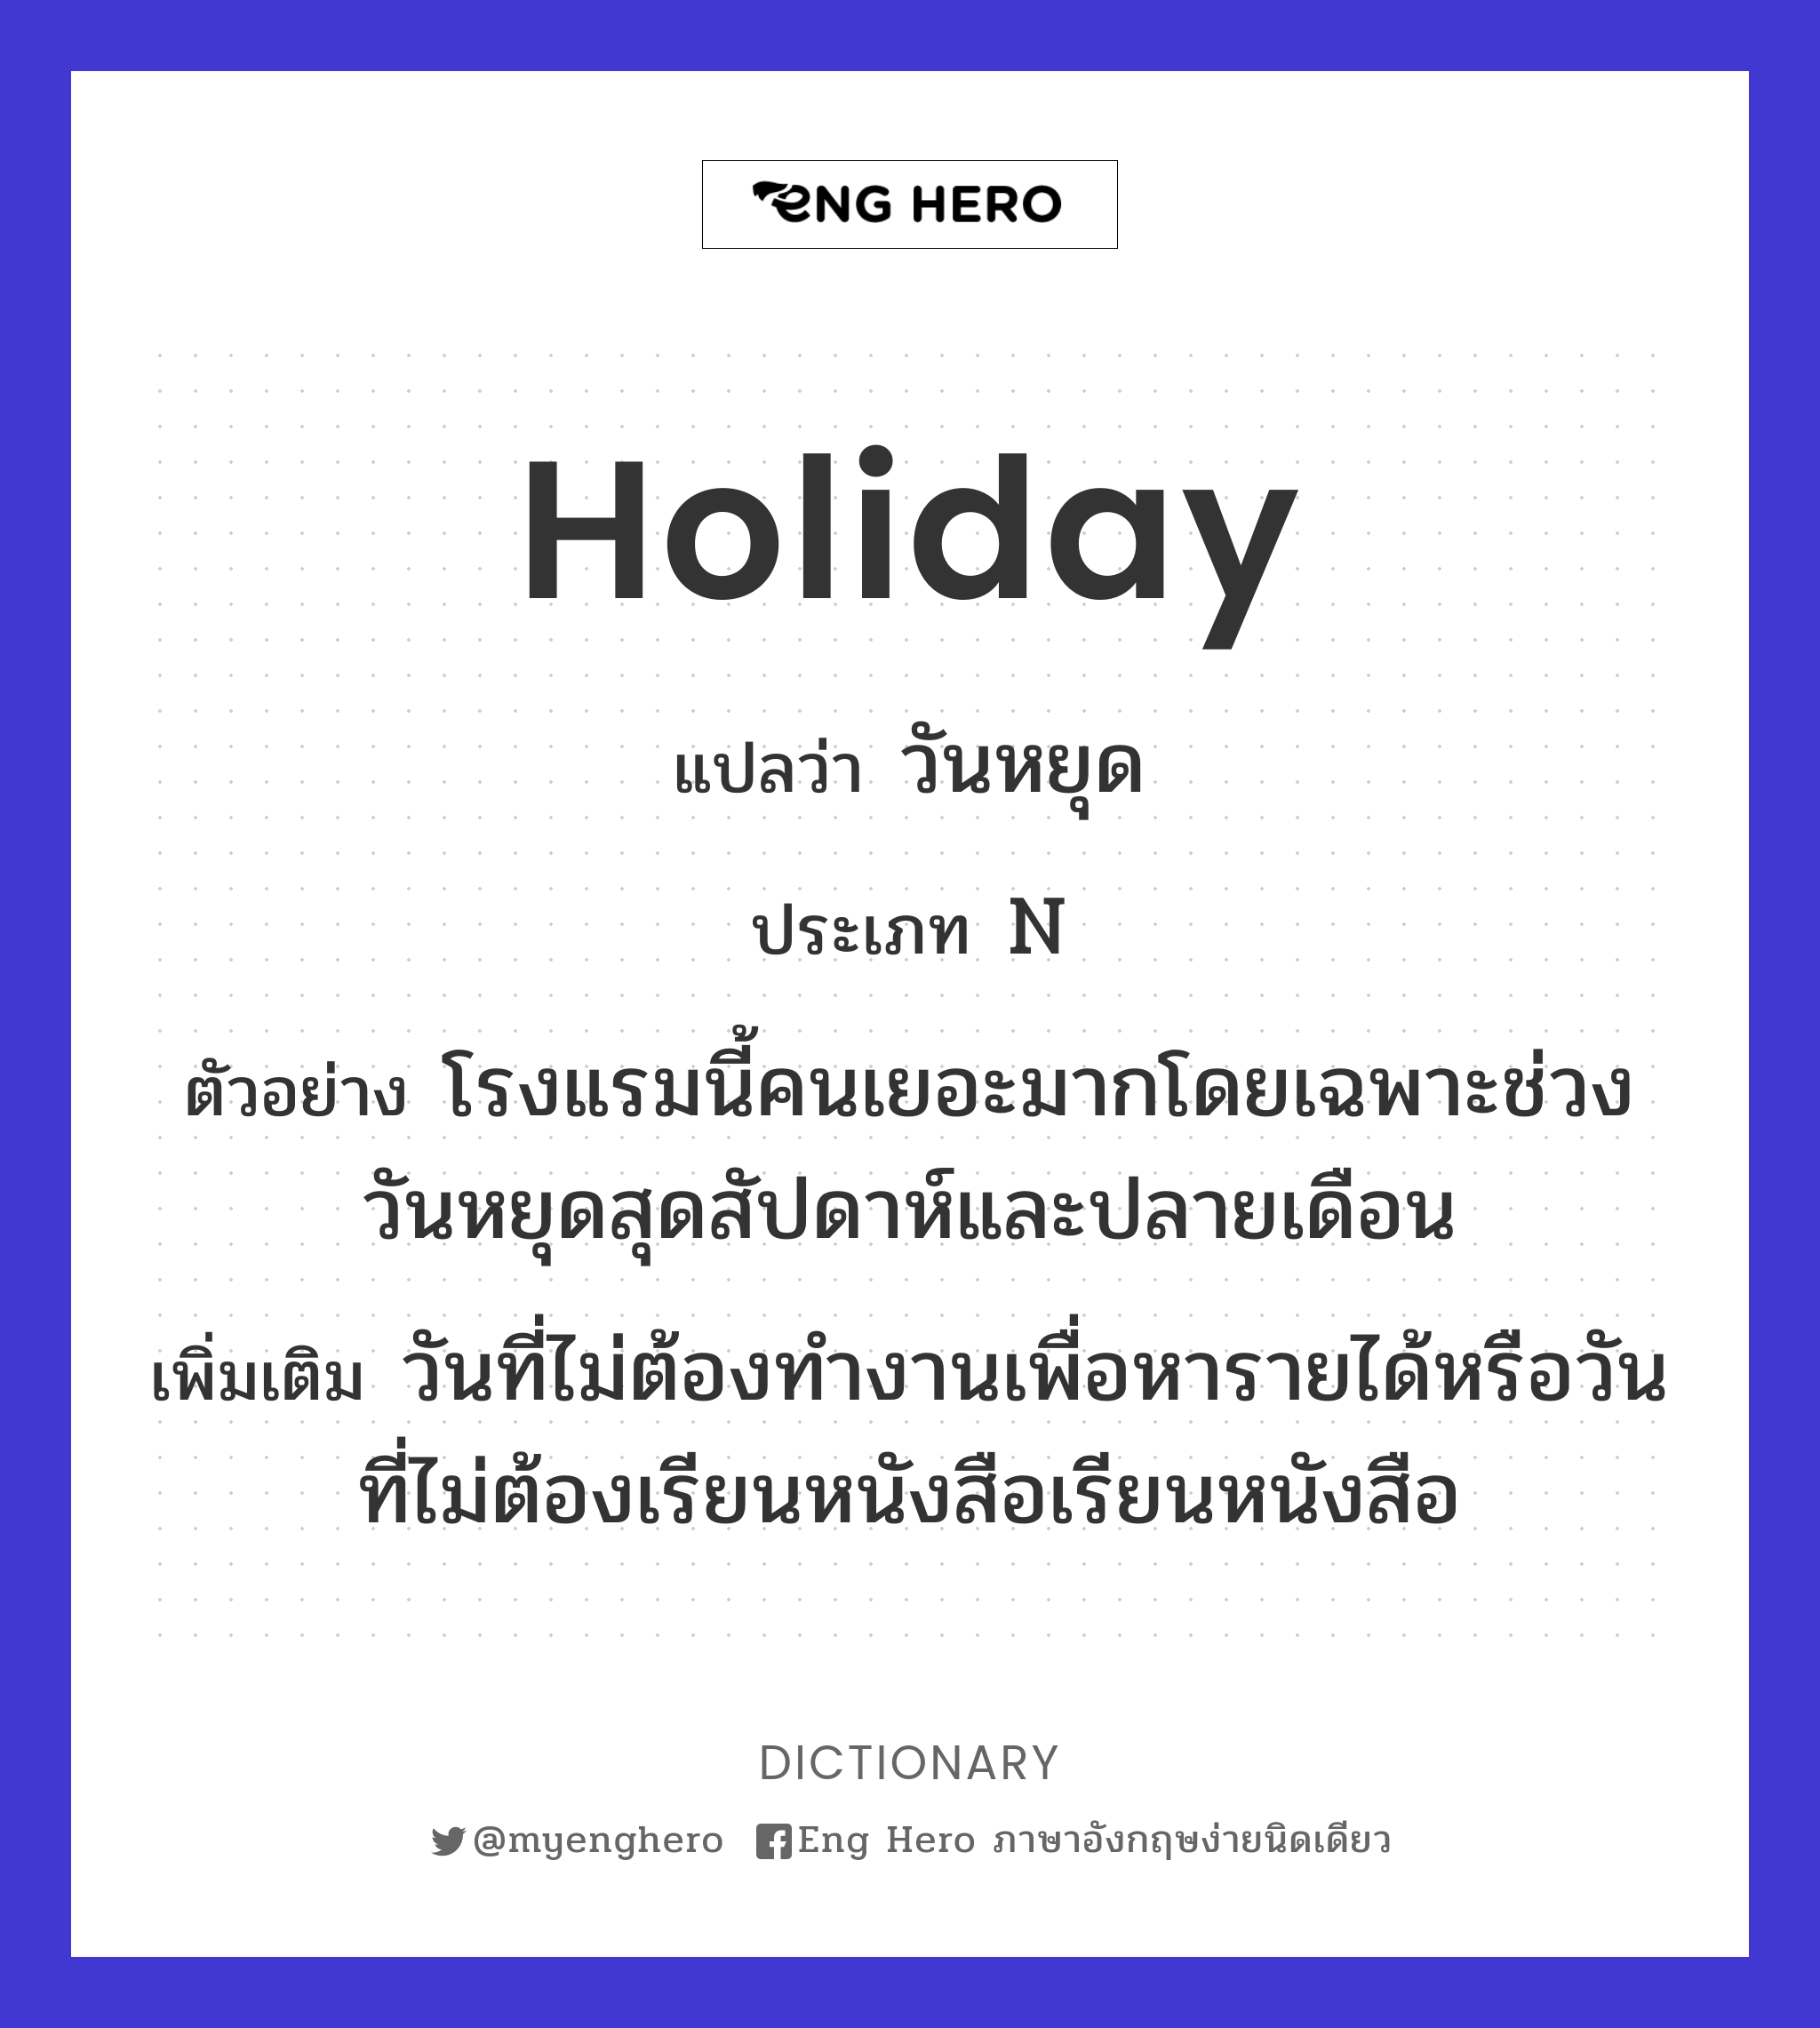 Holiday แปลว่า วันหยุด, วันพักผ่อน | Eng Hero เรียนภาษาอังกฤษ ออนไลน์ ฟรี